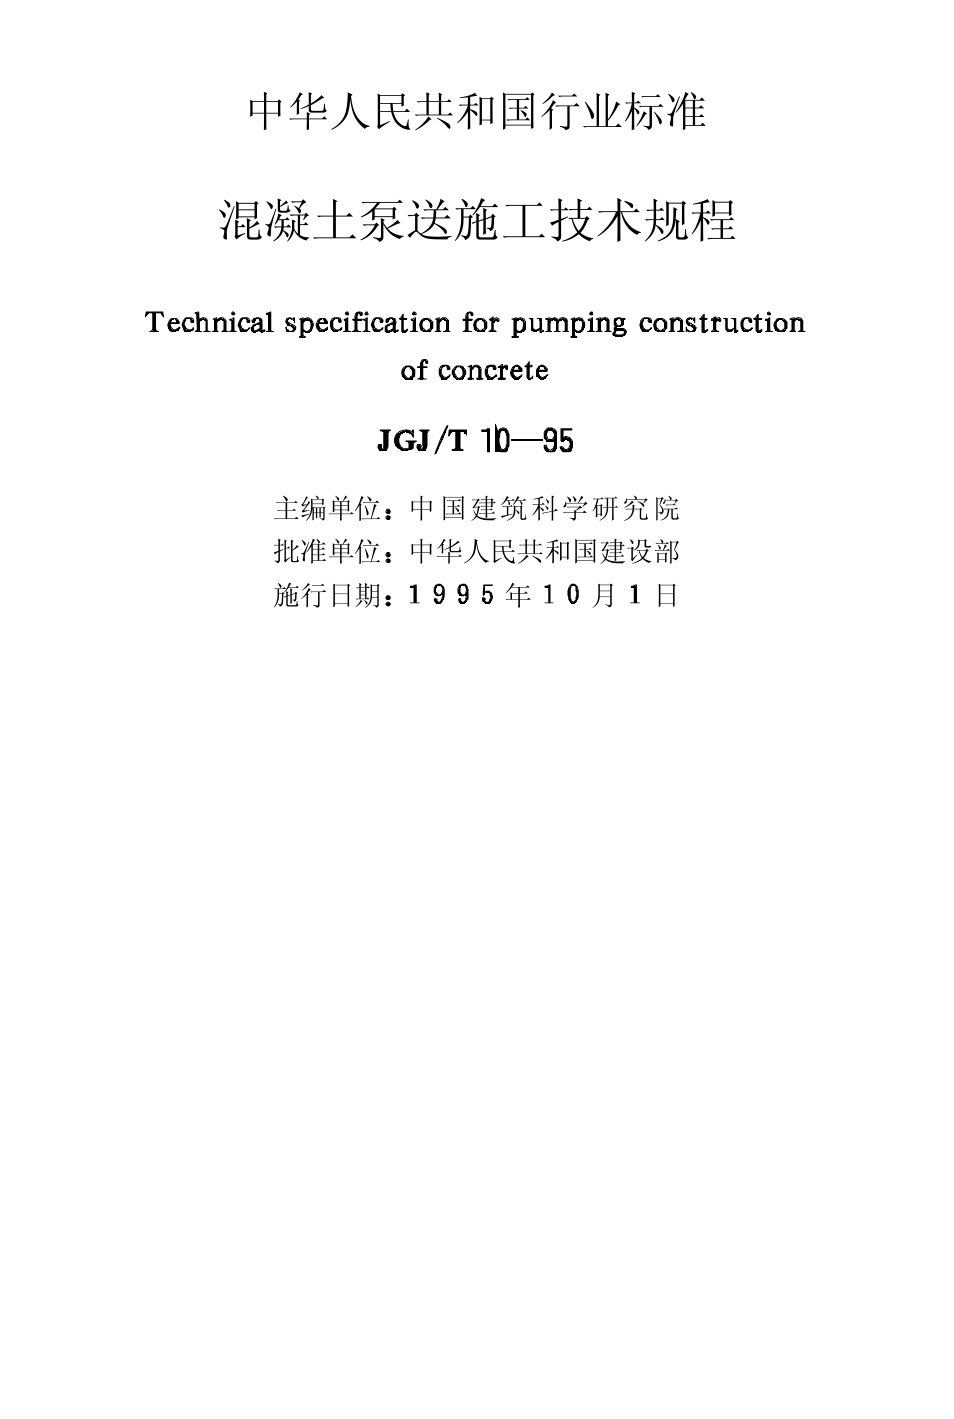 混凝土泵送施工技术规程JGJT10-95